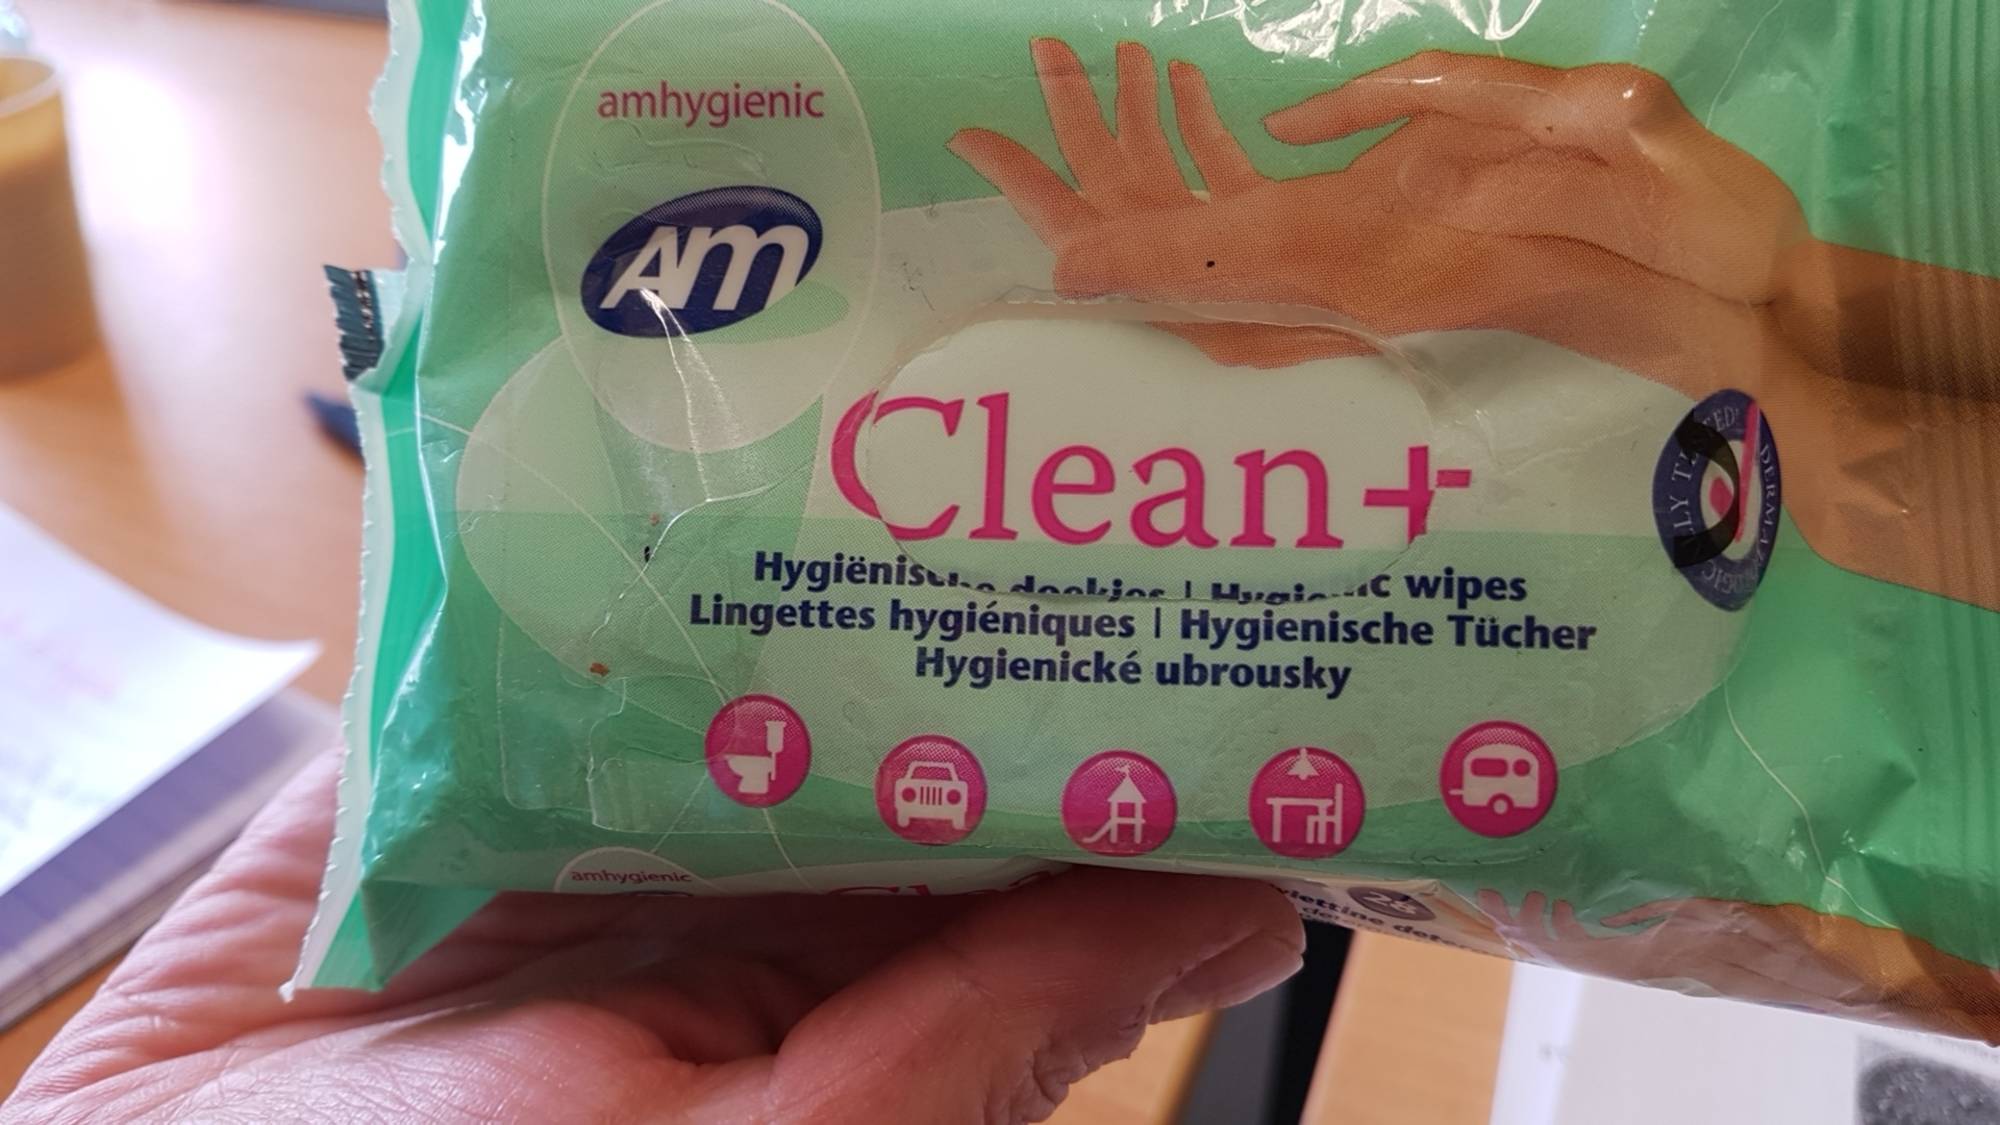 AM - Clean+ - Lingettes hygiéniques